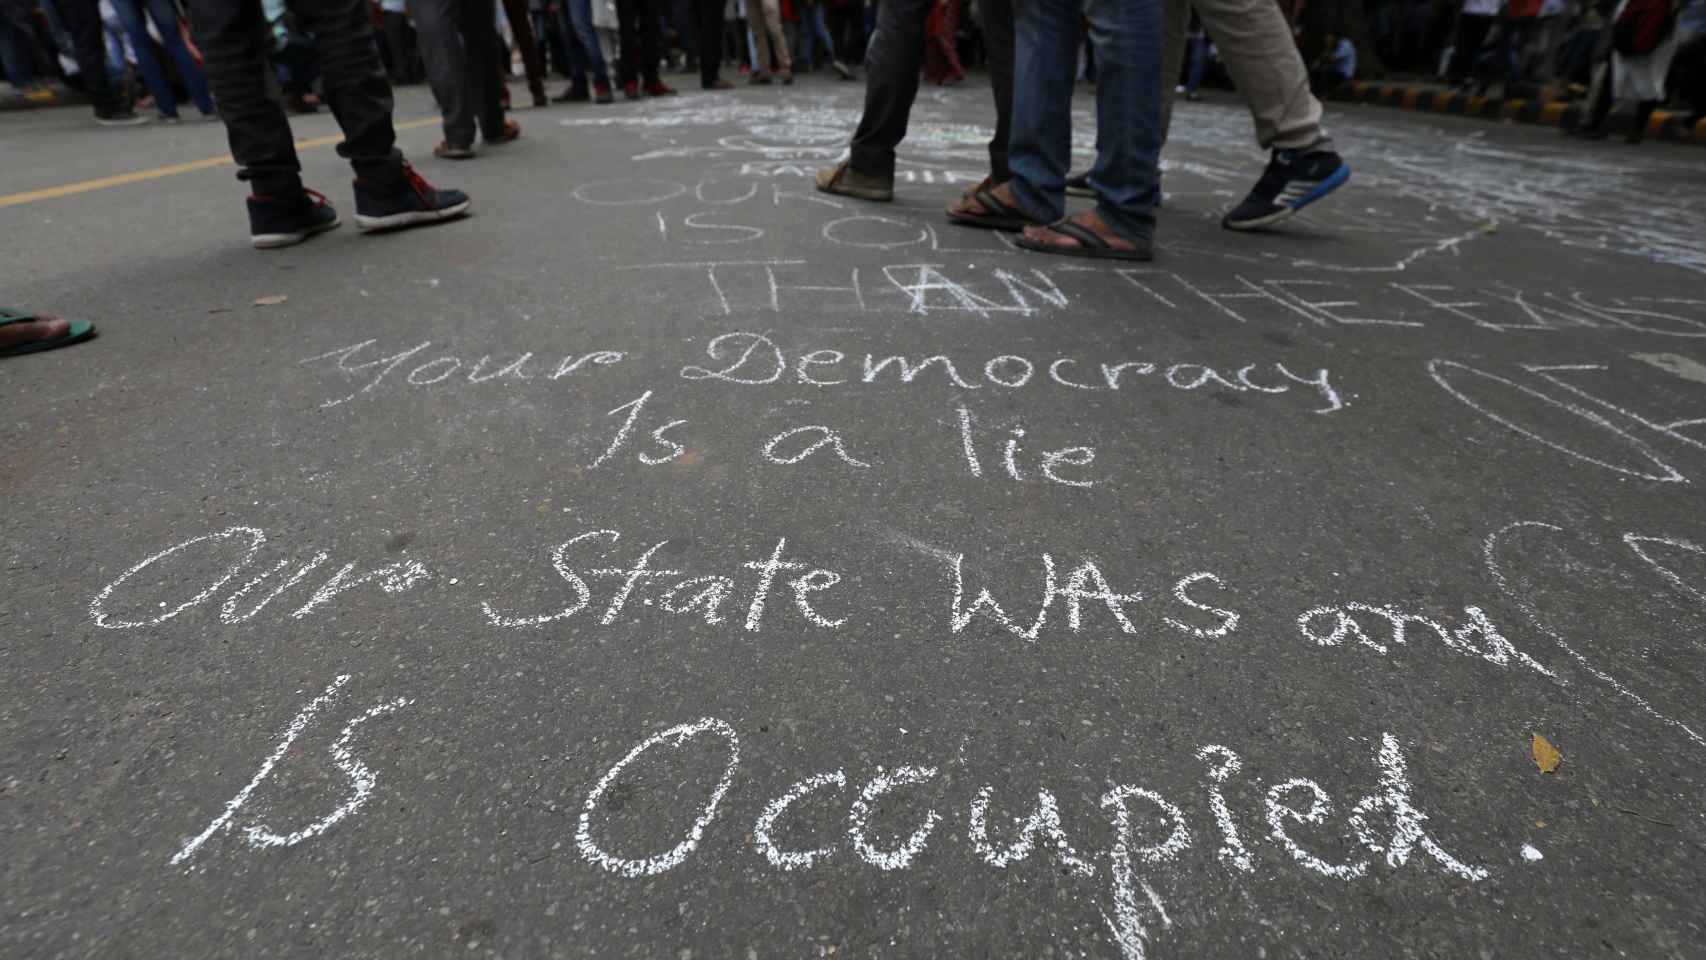 Nuestro estado fue y está ocupado escribieron los manifestantes indios.